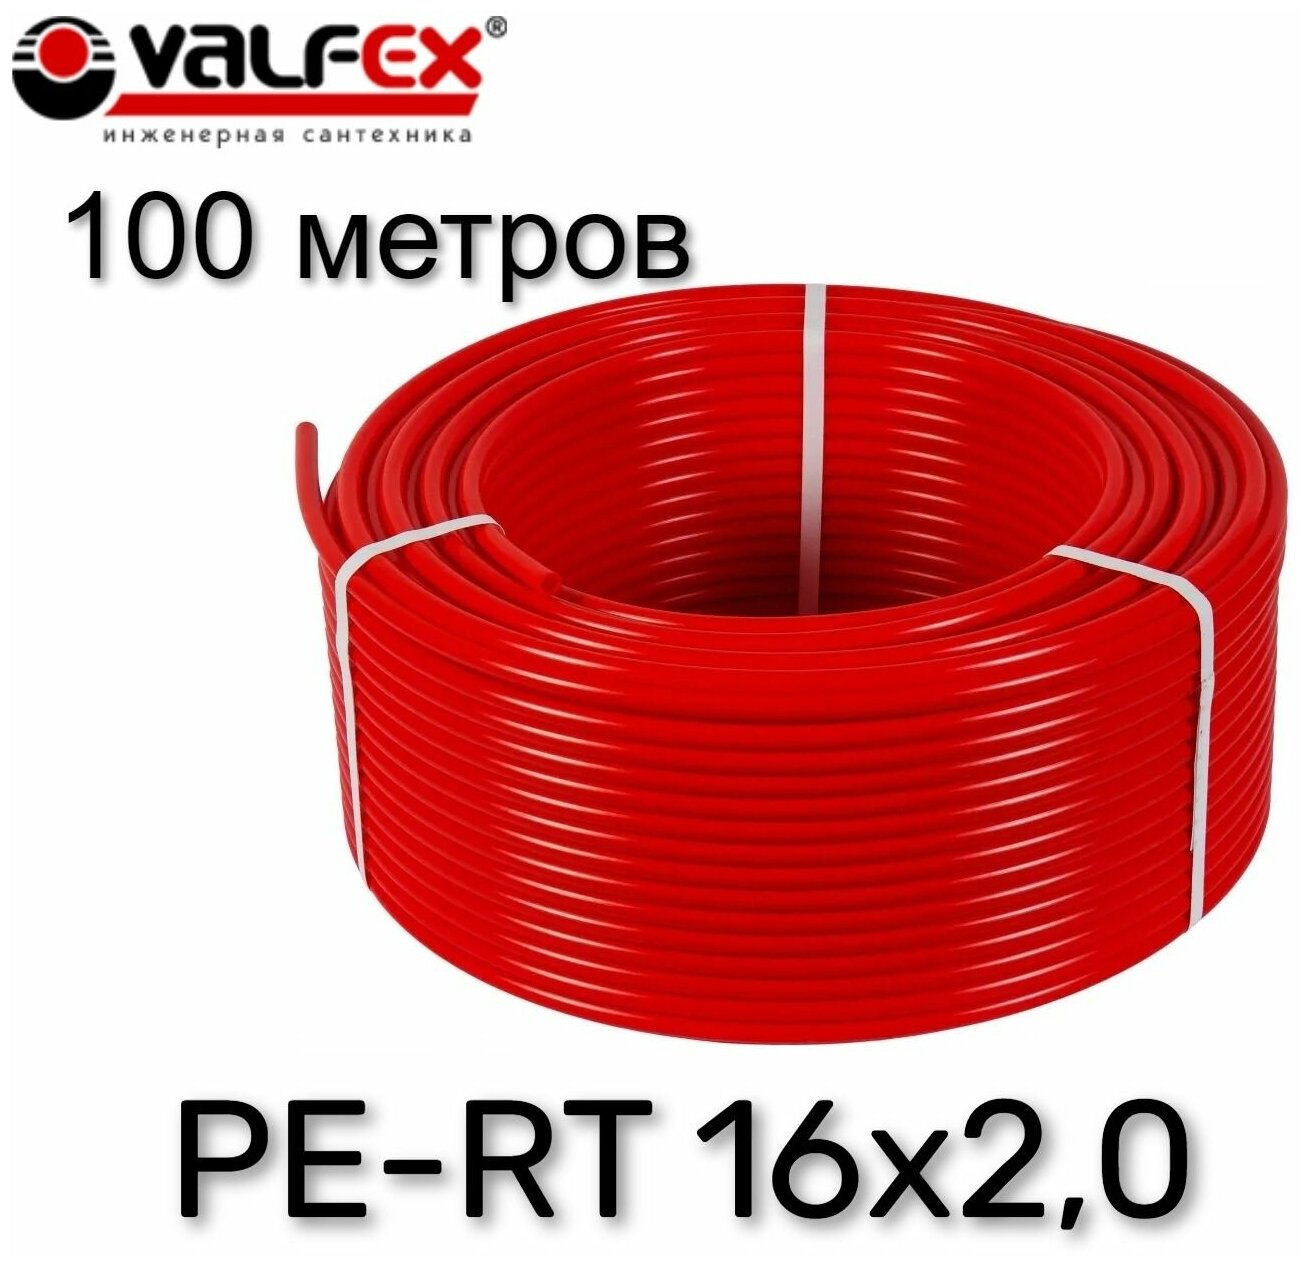 Труба из сшитого полиэтилена для теплого пола VALFEX PE-RT 100 метров 16х2,0 (красная)